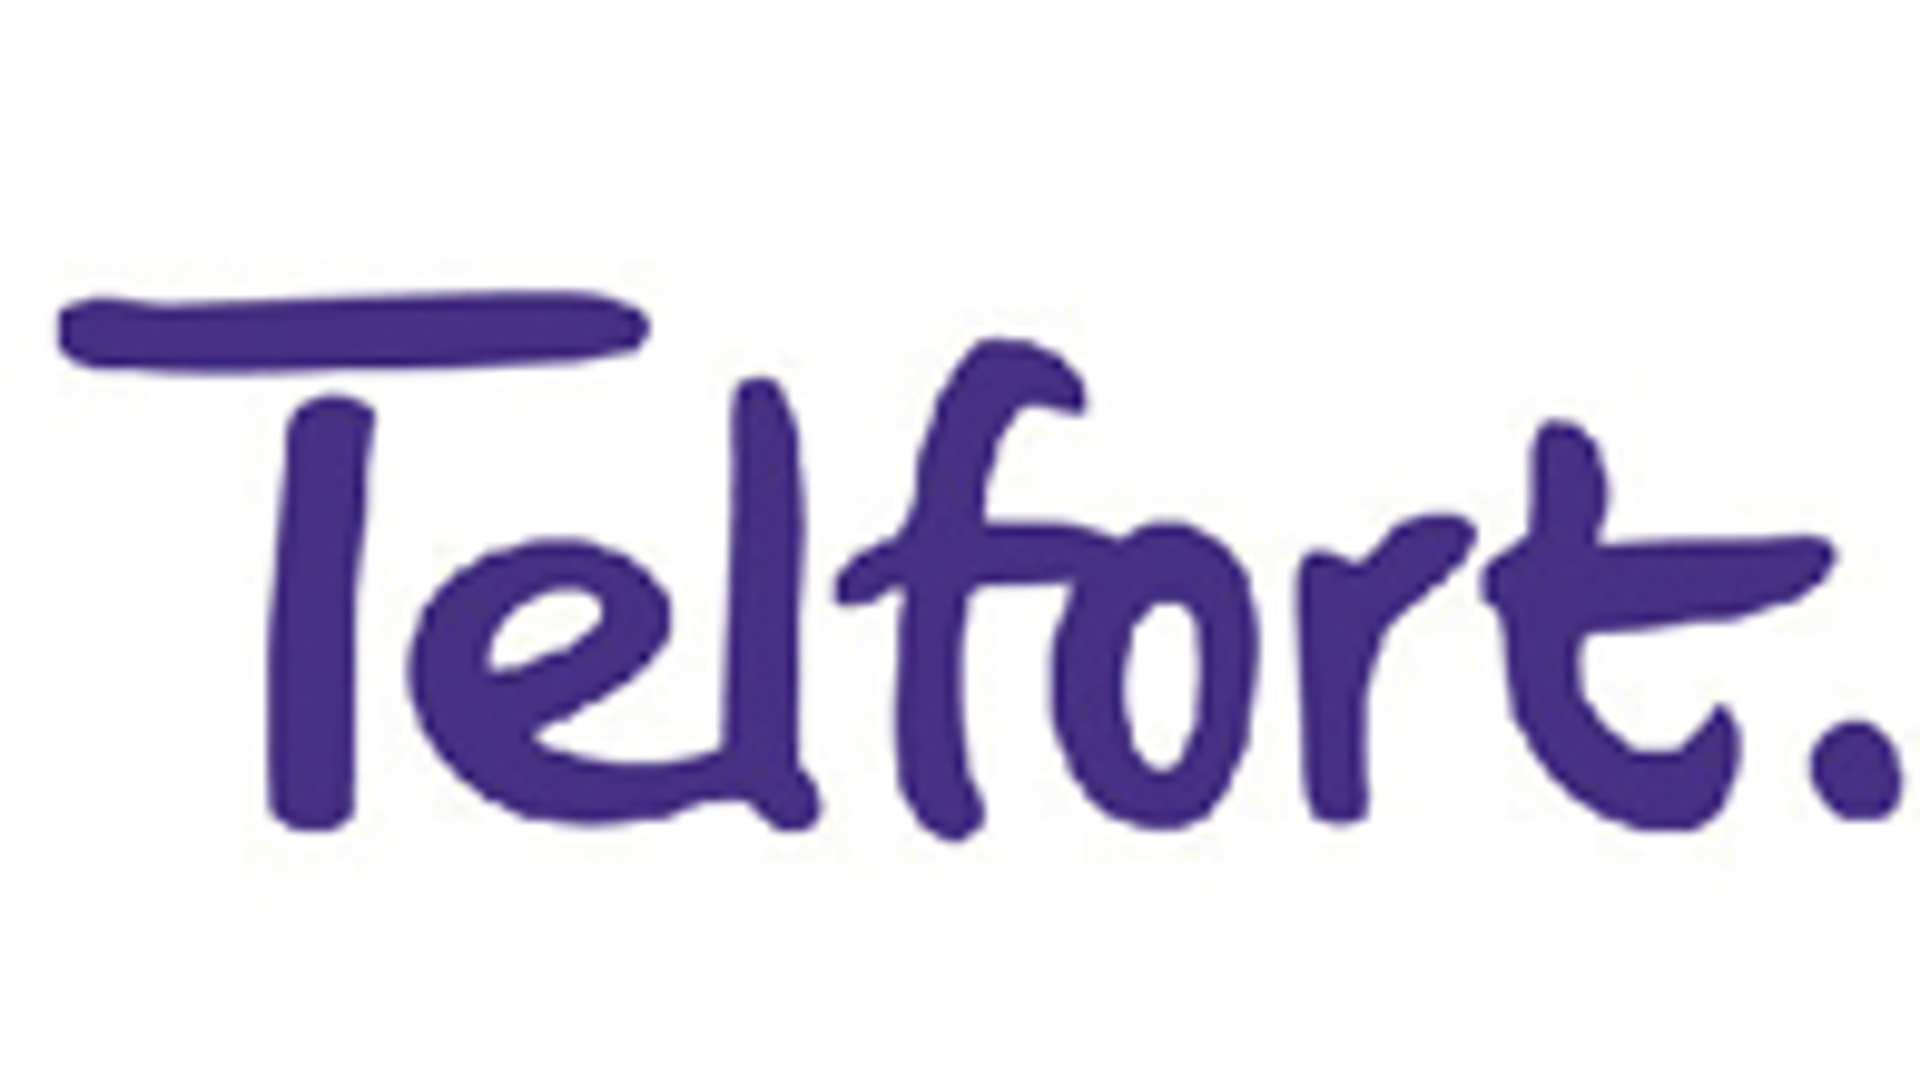 Telfort_logo_01.jpg